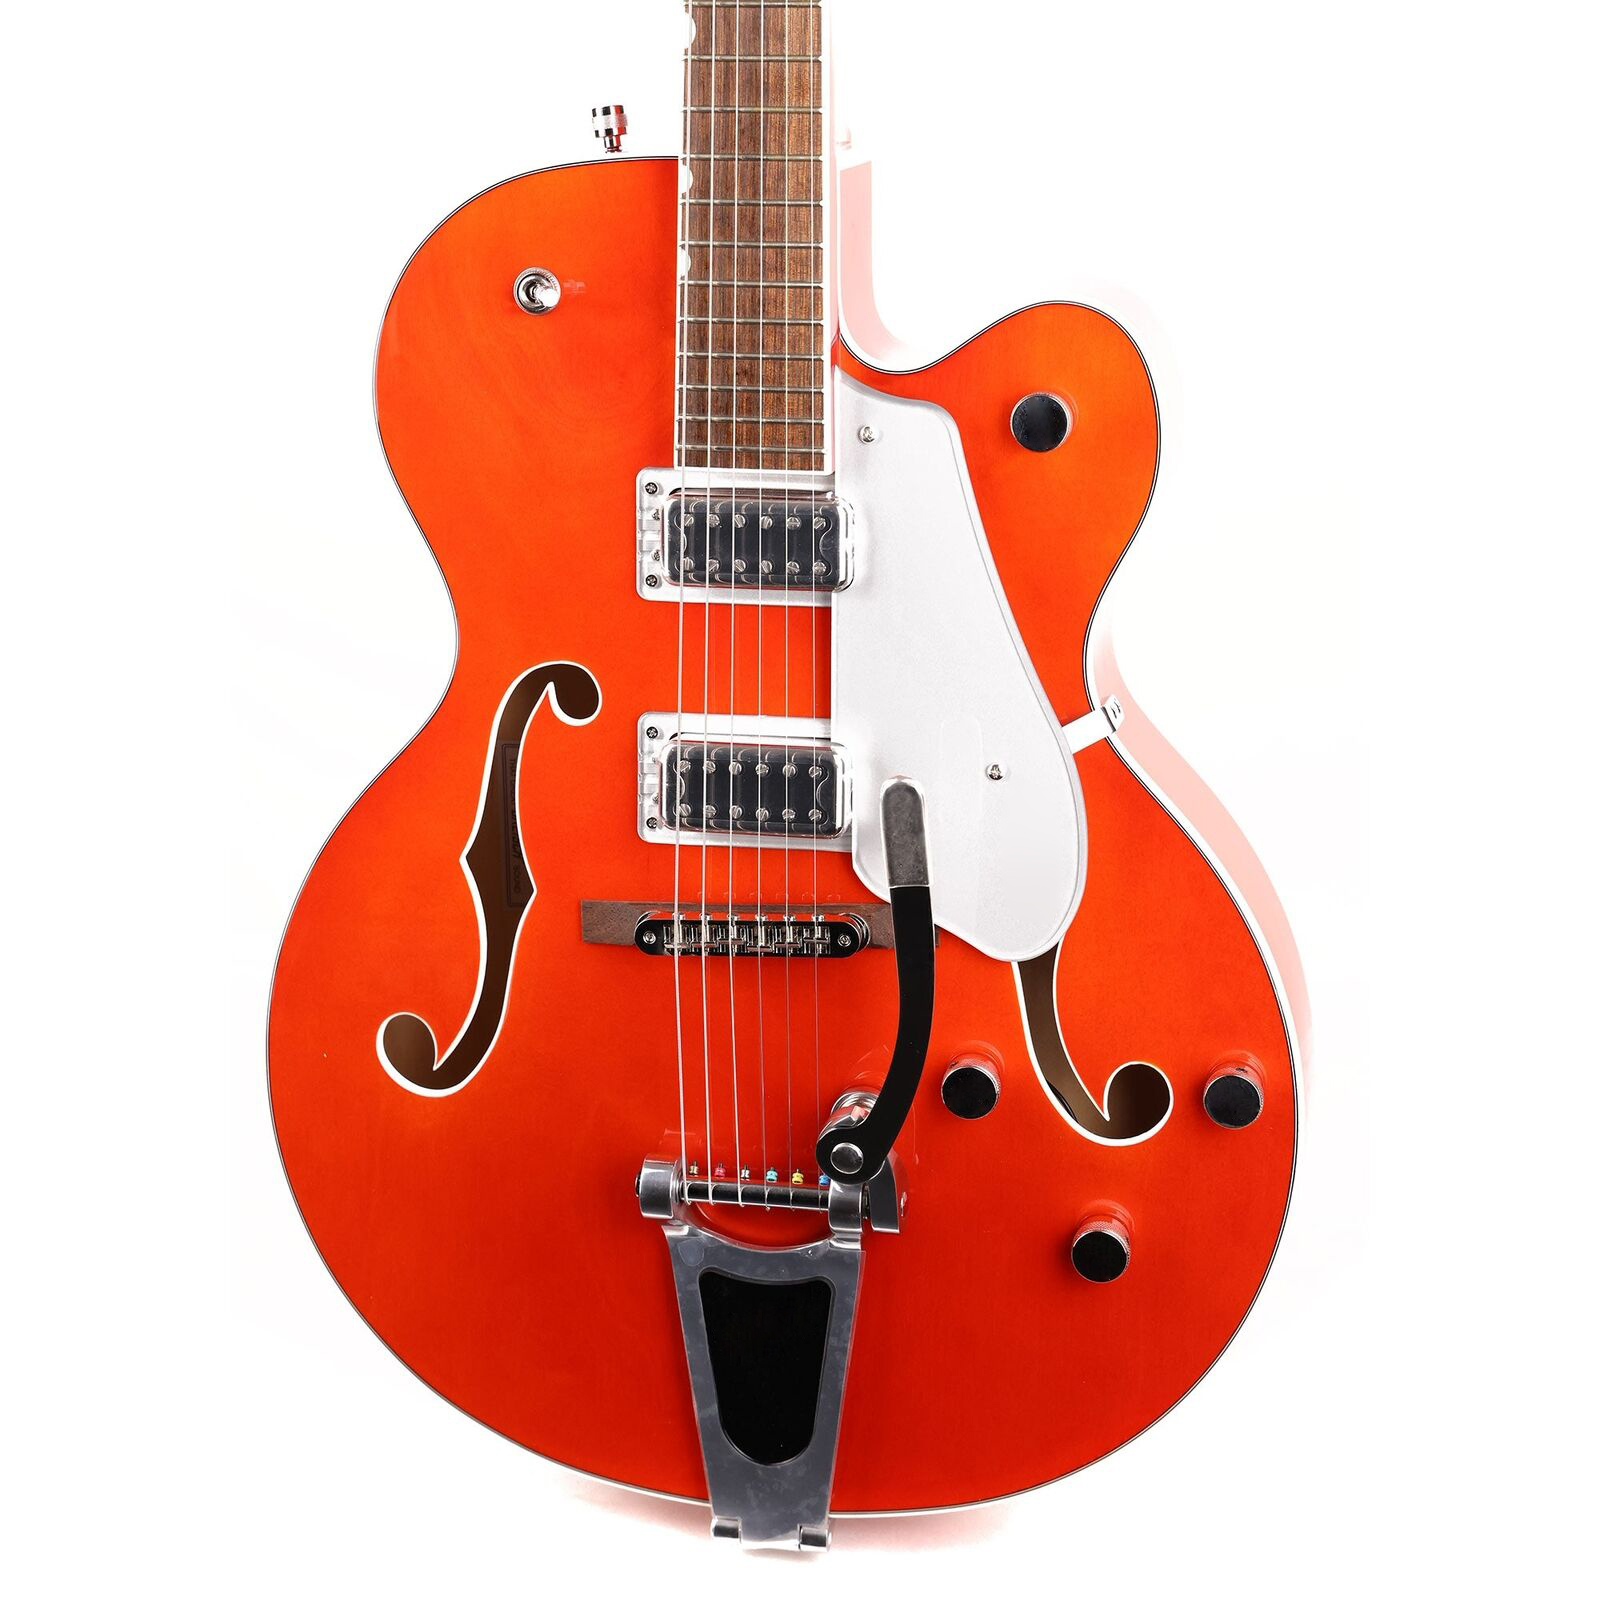 G5420Tエレクトロマティッククラシックホローボディシングルカットオレンジセントエレクトリックギターと同じ写真と同じ